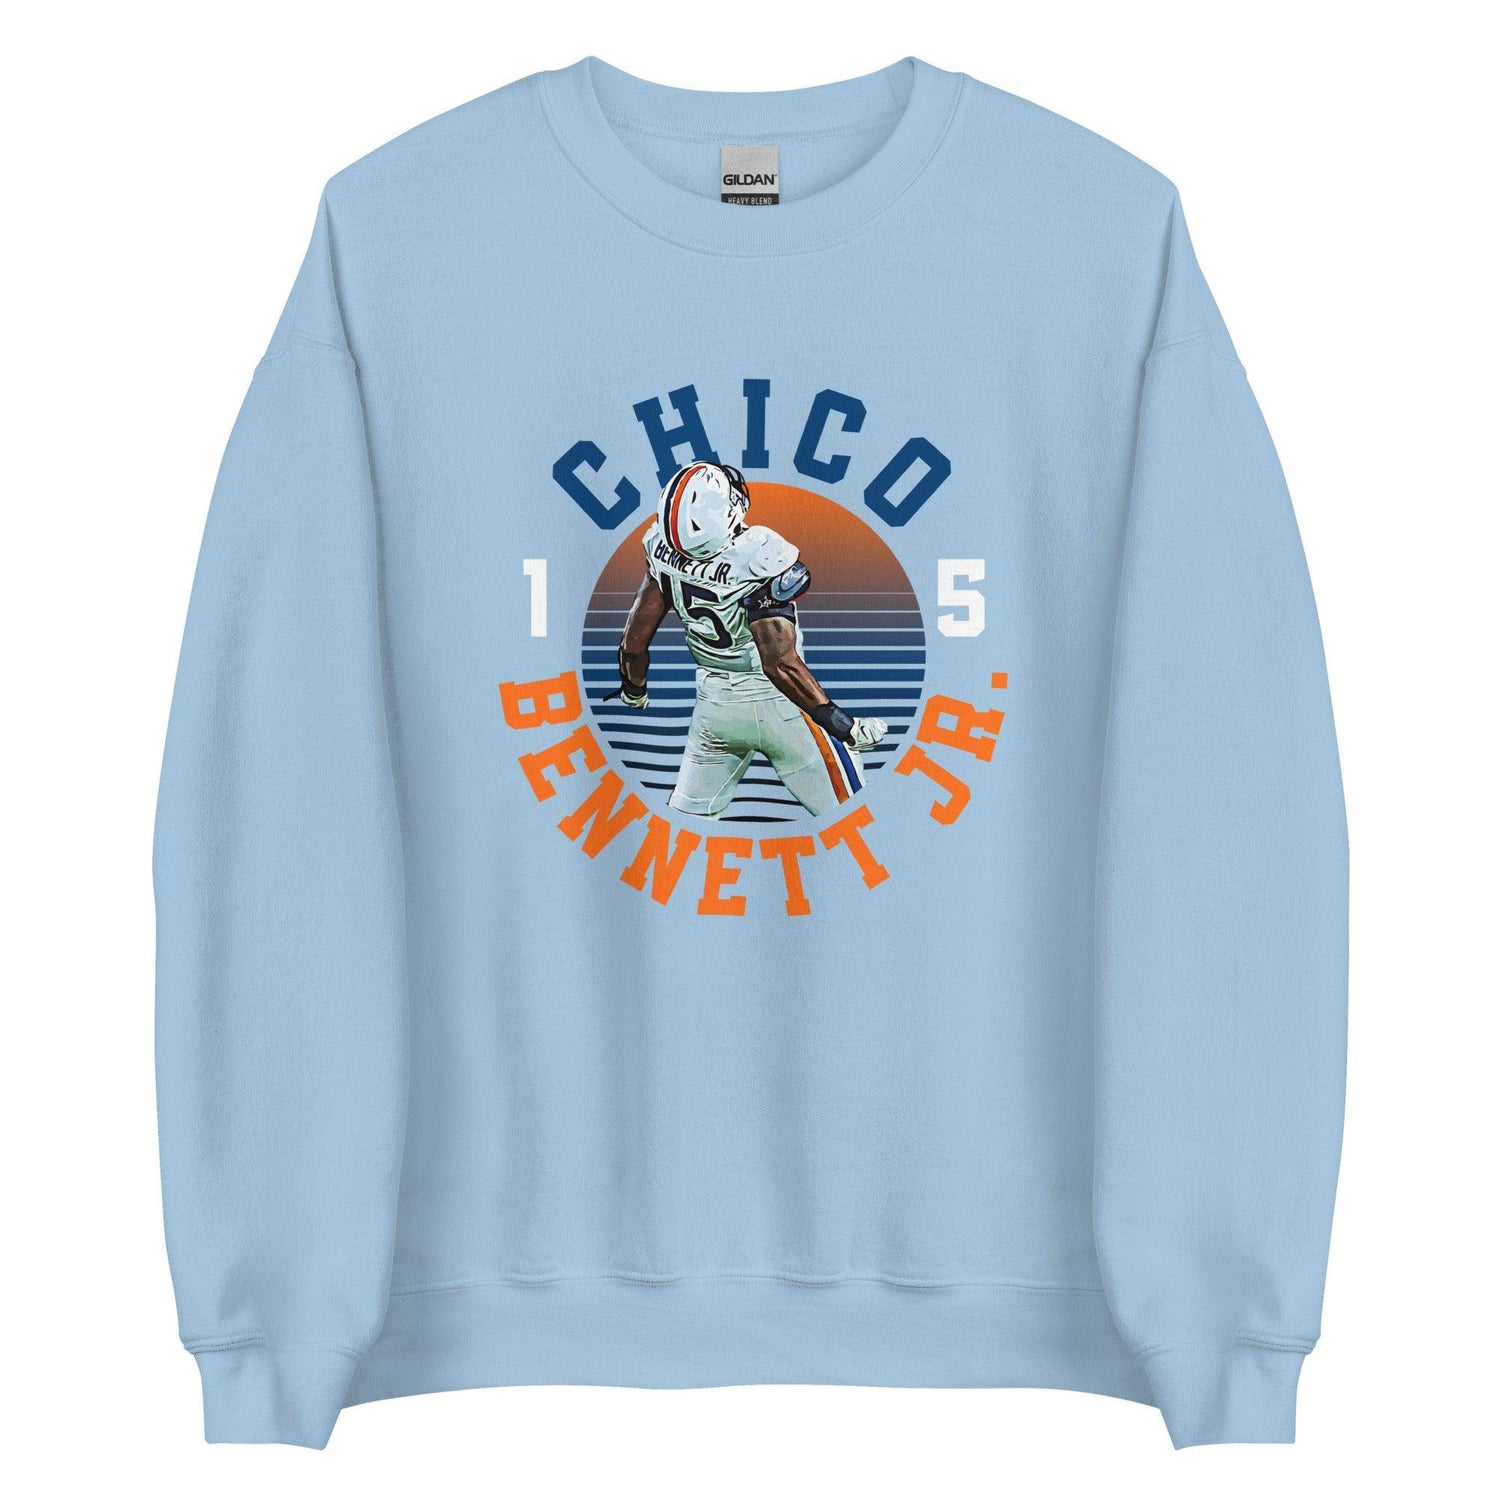 Chico Bennett Jr. "Gameday" Sweatshirt - Fan Arch